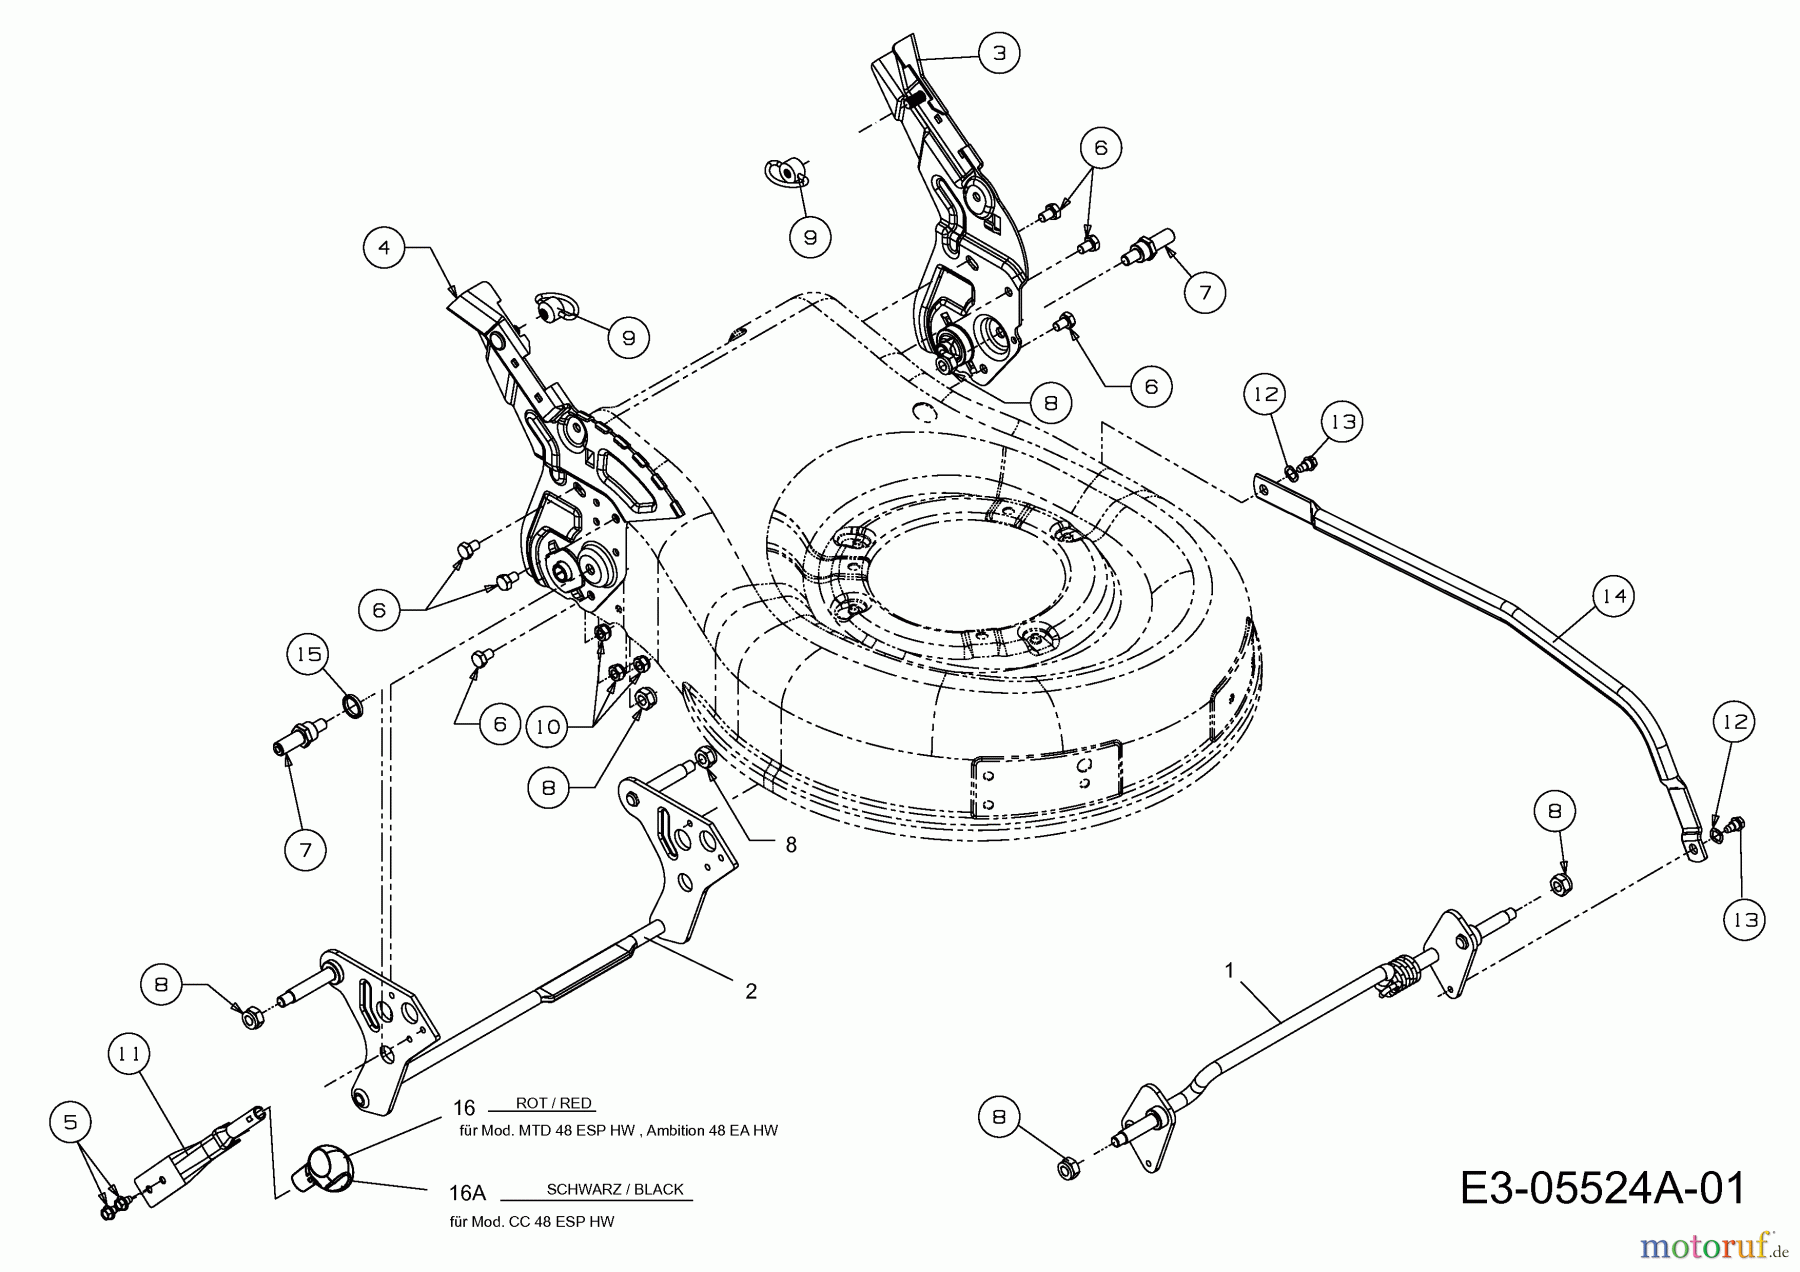  Wolf-Garten Elektromäher mit Antrieb Ambition 48 EAHW 18AR11L-650  (2013) Schnitthöhenverstellung